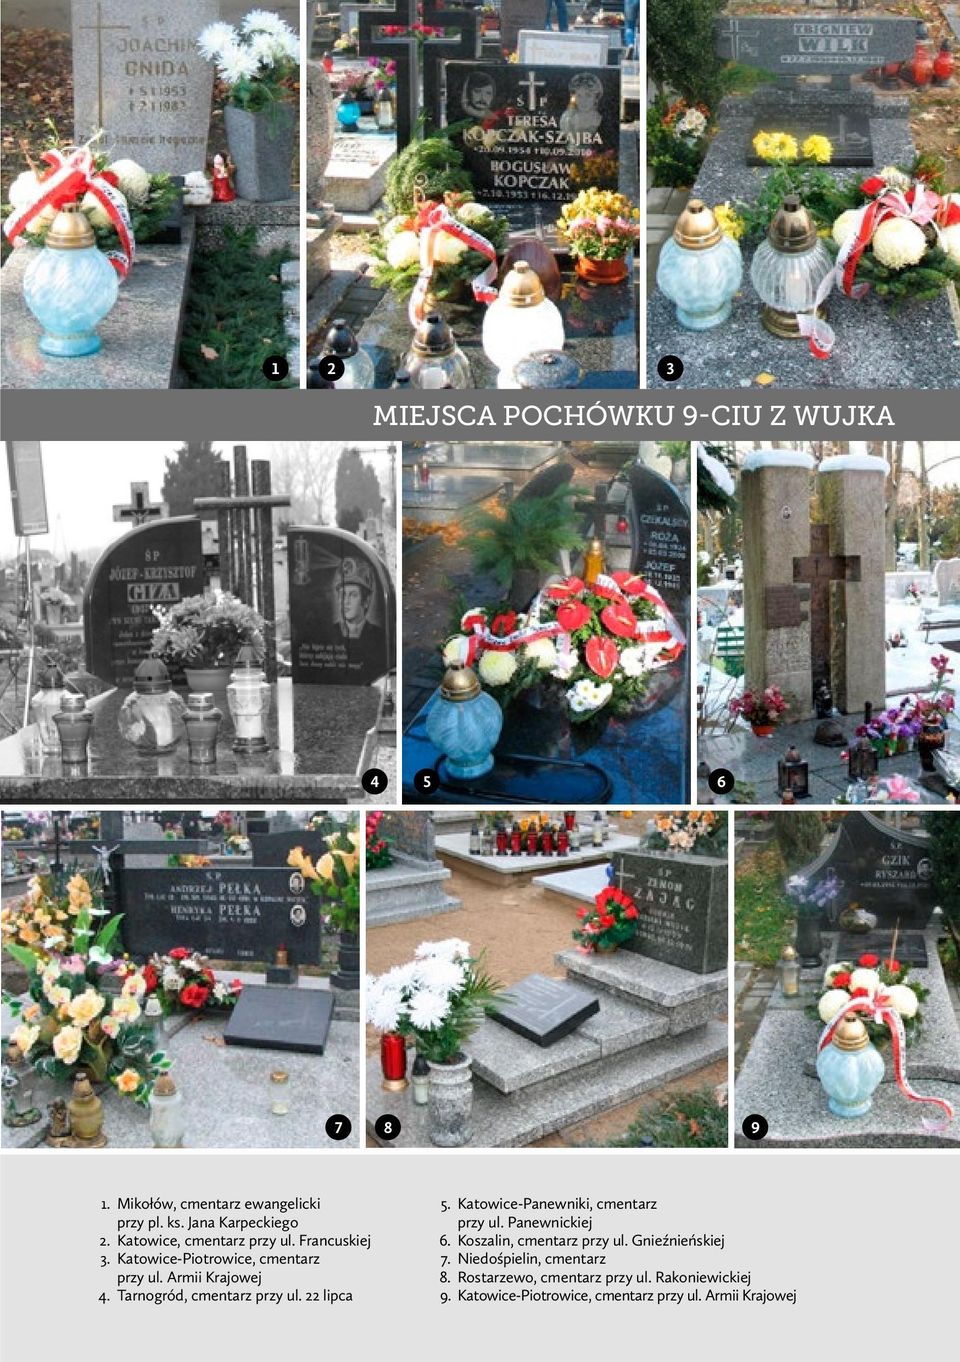 Tarnogród, cmentarz przy ul. 22 lipca 5. Katowice-Panewniki, cmentarz przy ul. Panewnickiej 6. Koszalin, cmentarz przy ul.